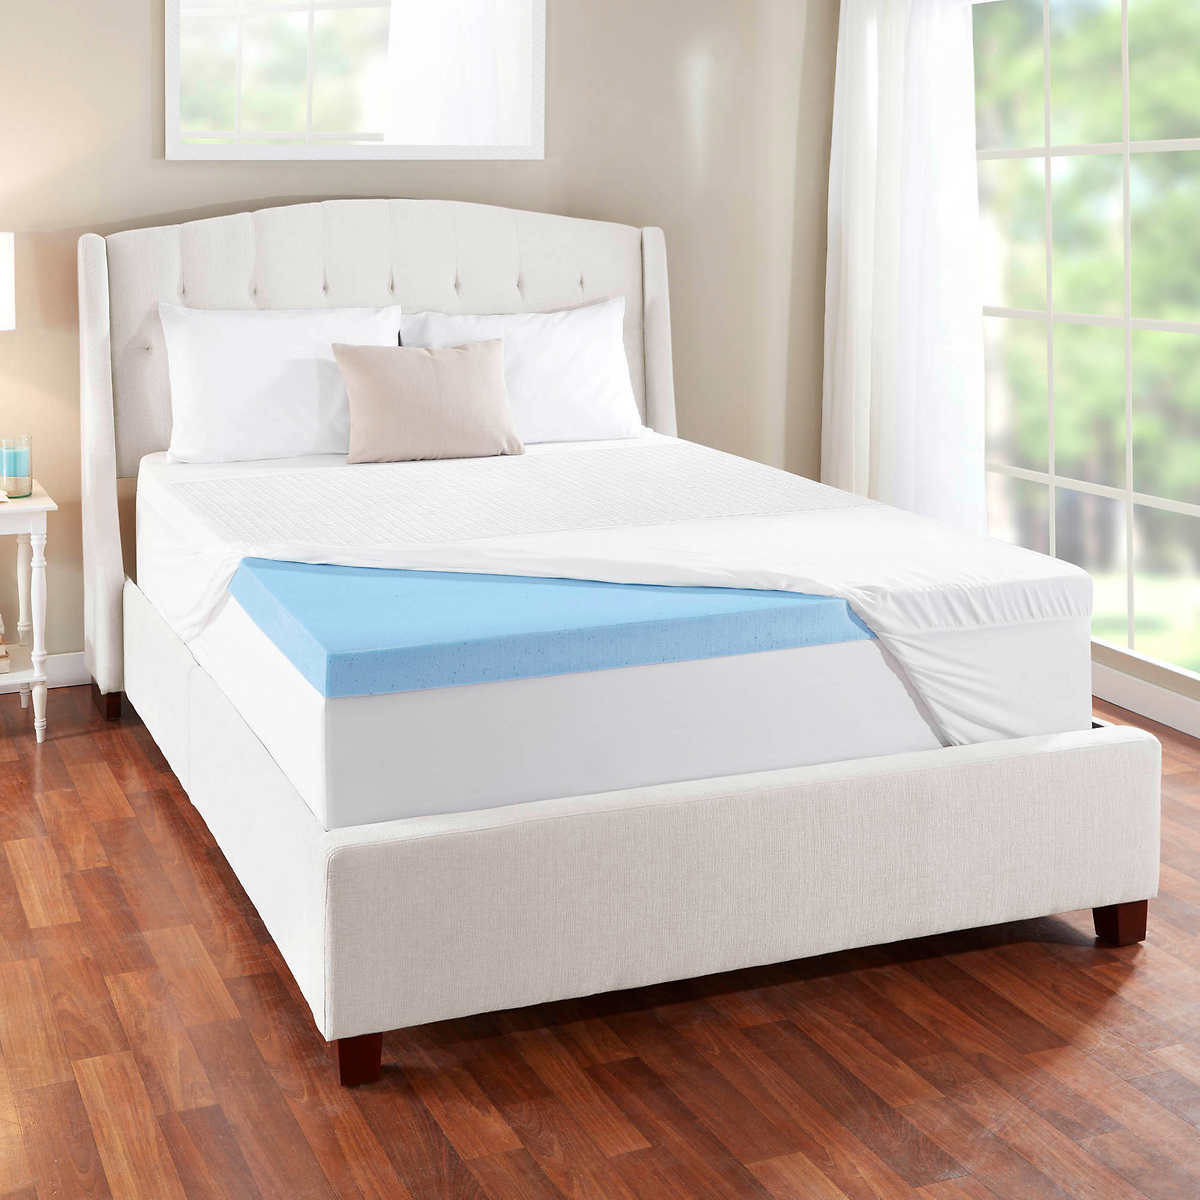 novaform mattress topper costco